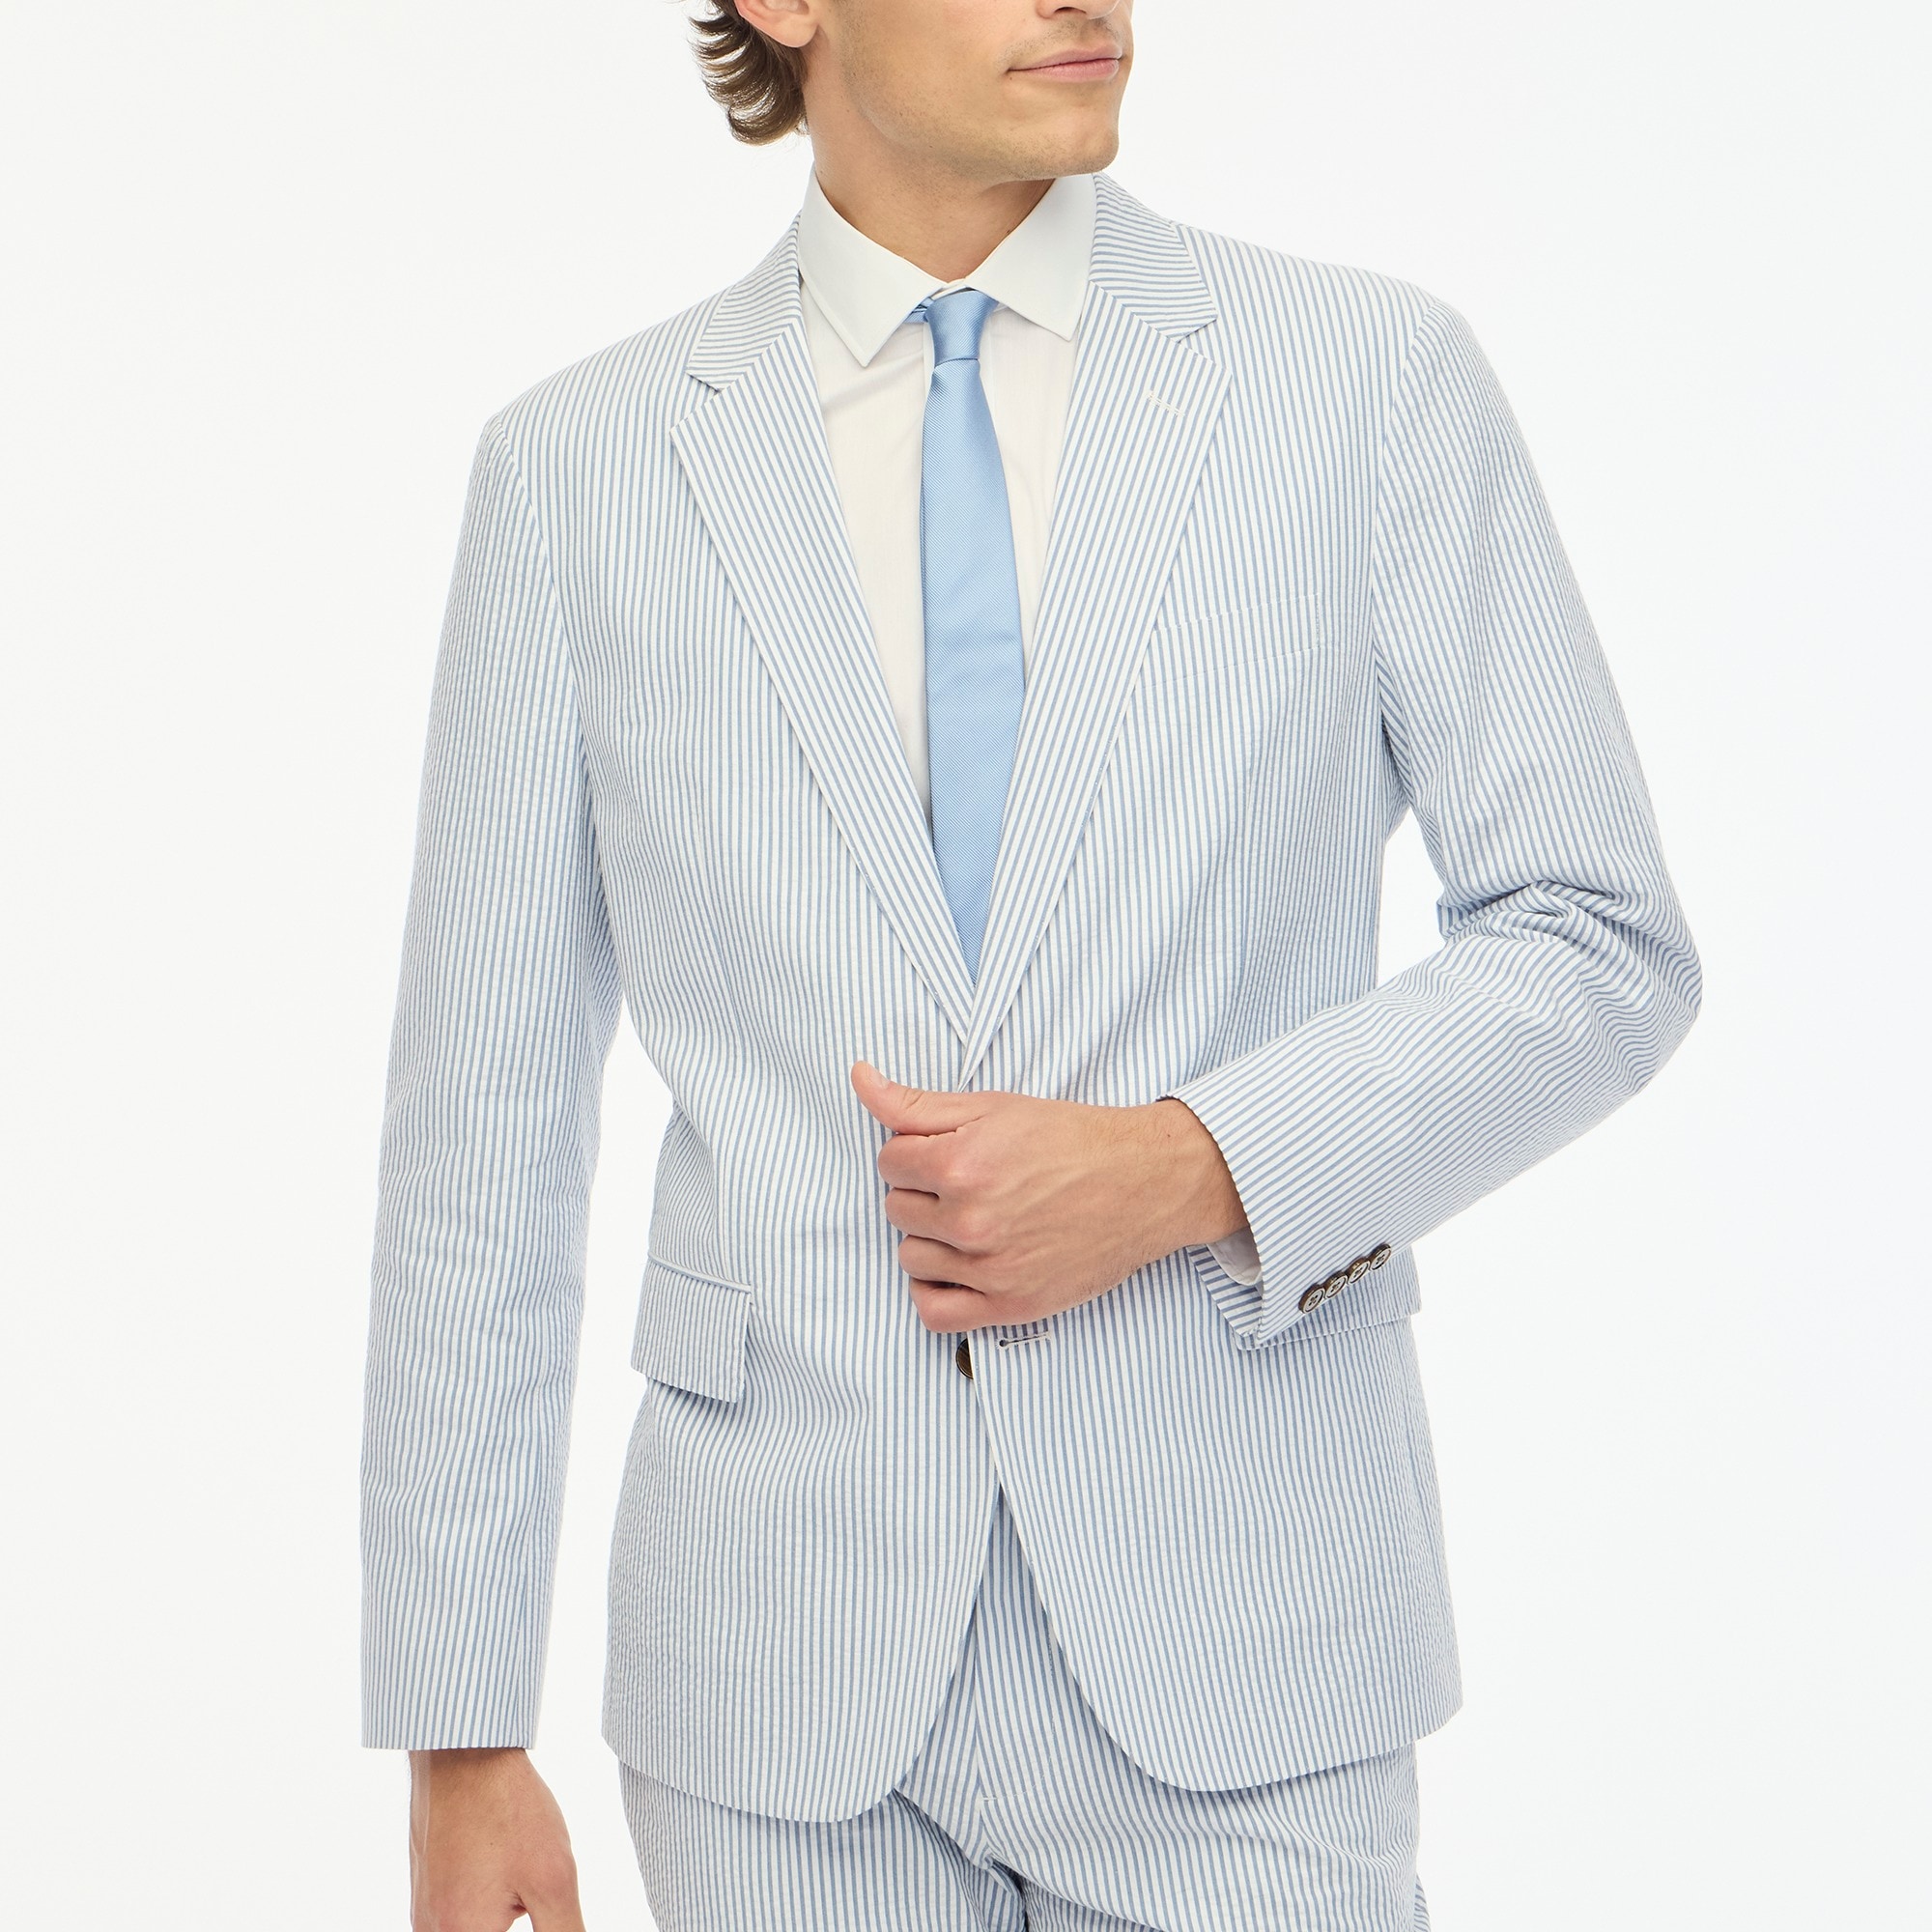 Jcrew Slim unstructured Thompson suit jacket in seersucker